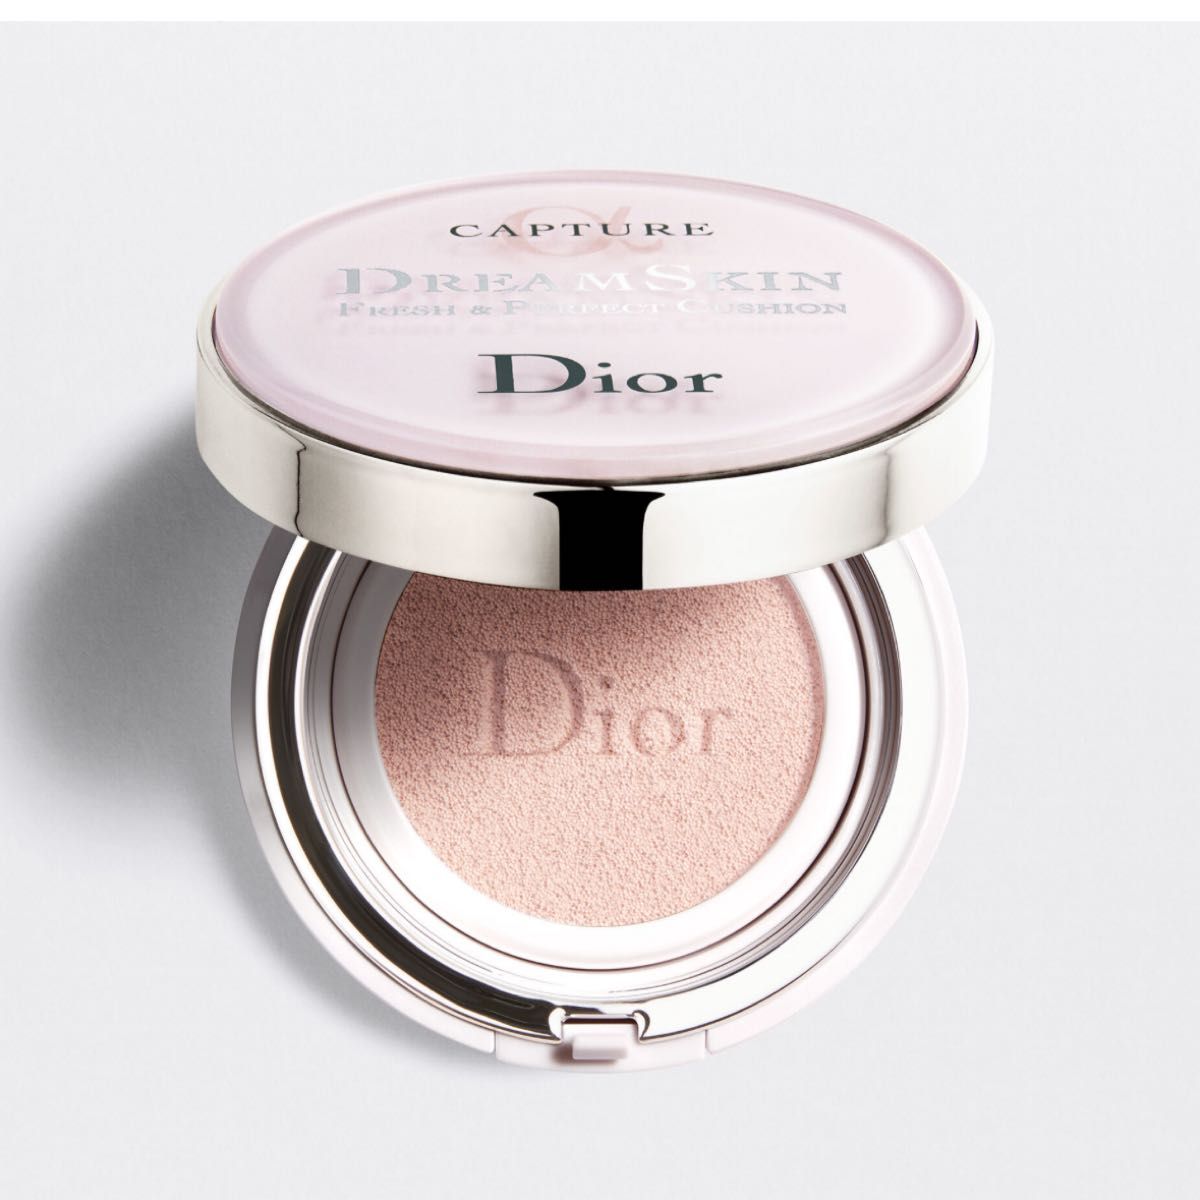 【新品】Dior カプチュール ドリームスキン モイスト クッション #000 SPF50 /PA+++